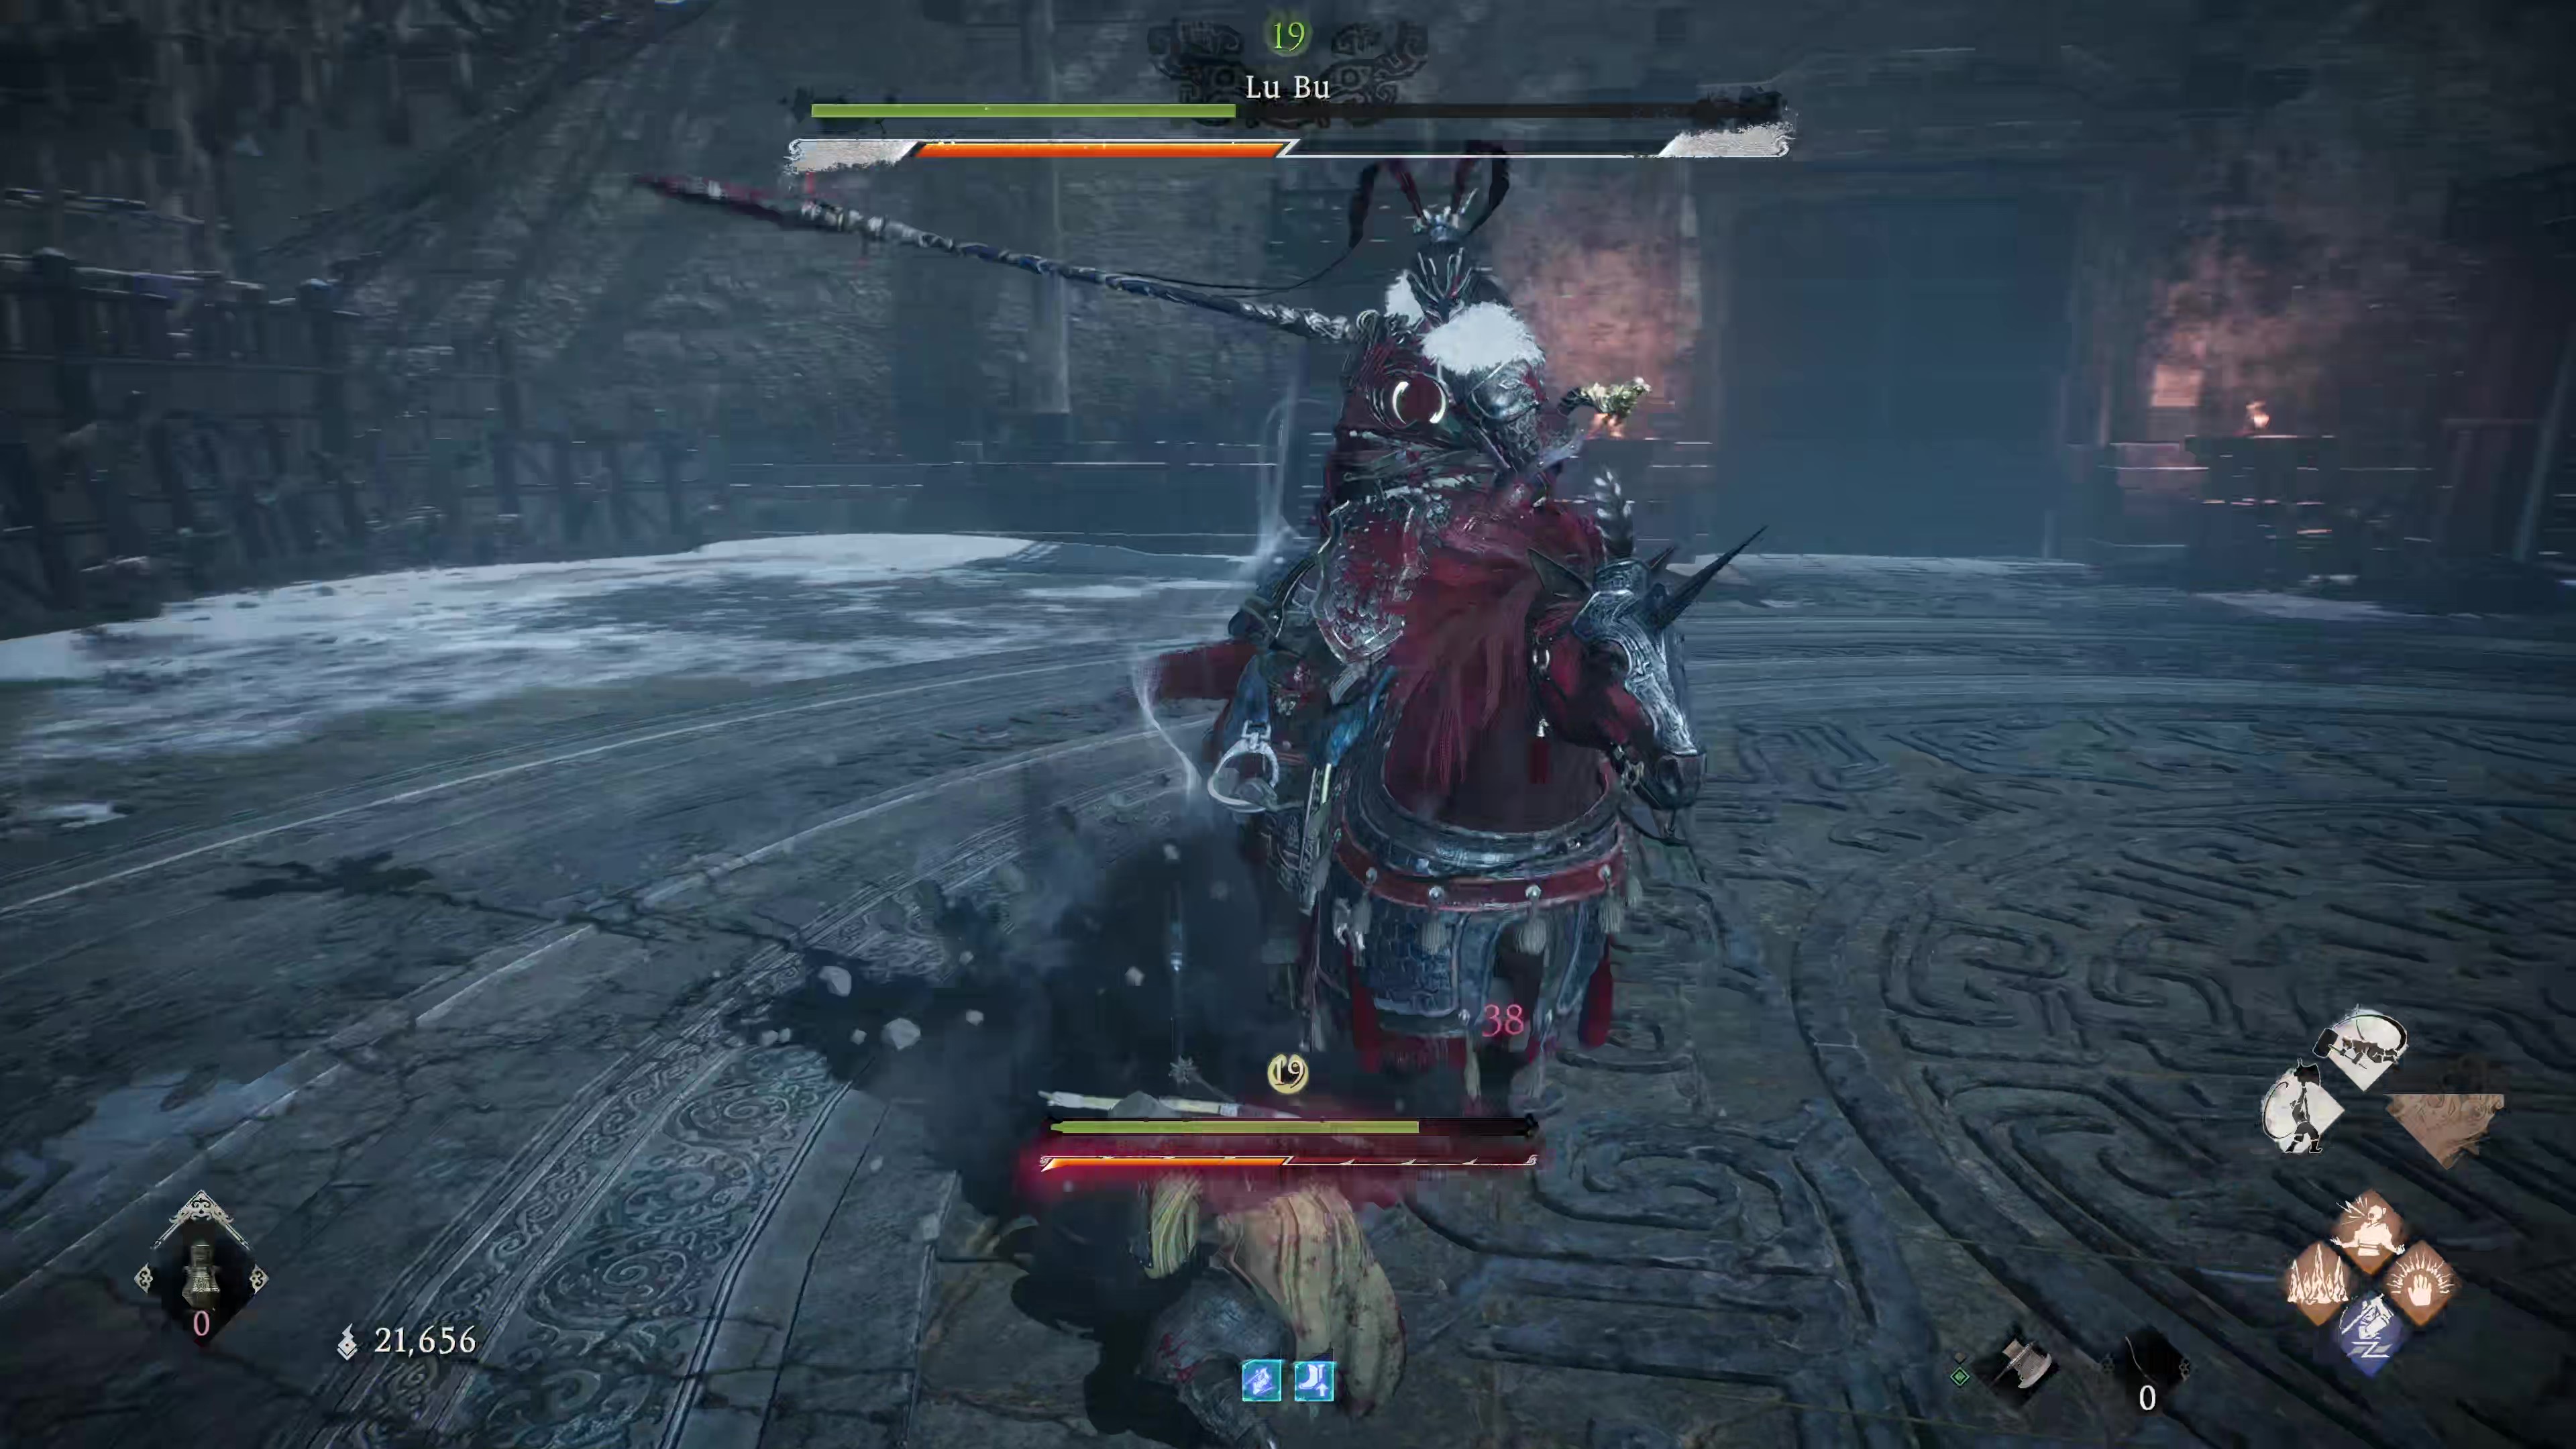 Скриншот из игры Wo Long: Fallen Dynasty, на котором игрок сражается с Лу Бу, он едет на Красном Зайце.